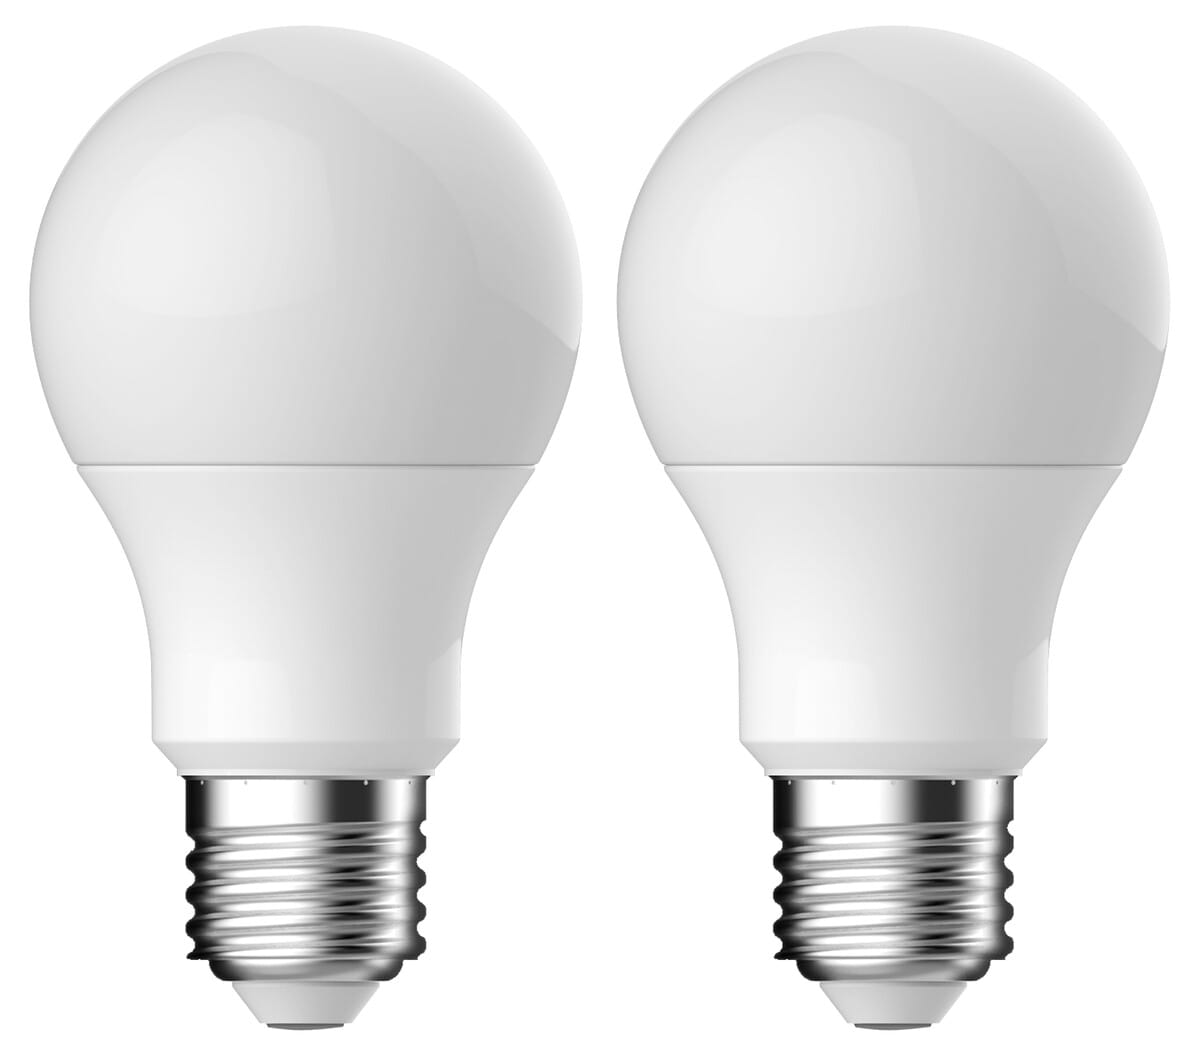 LED-lamppu E27 4,8 W Clas Ohlson, lämpimän valkoinen